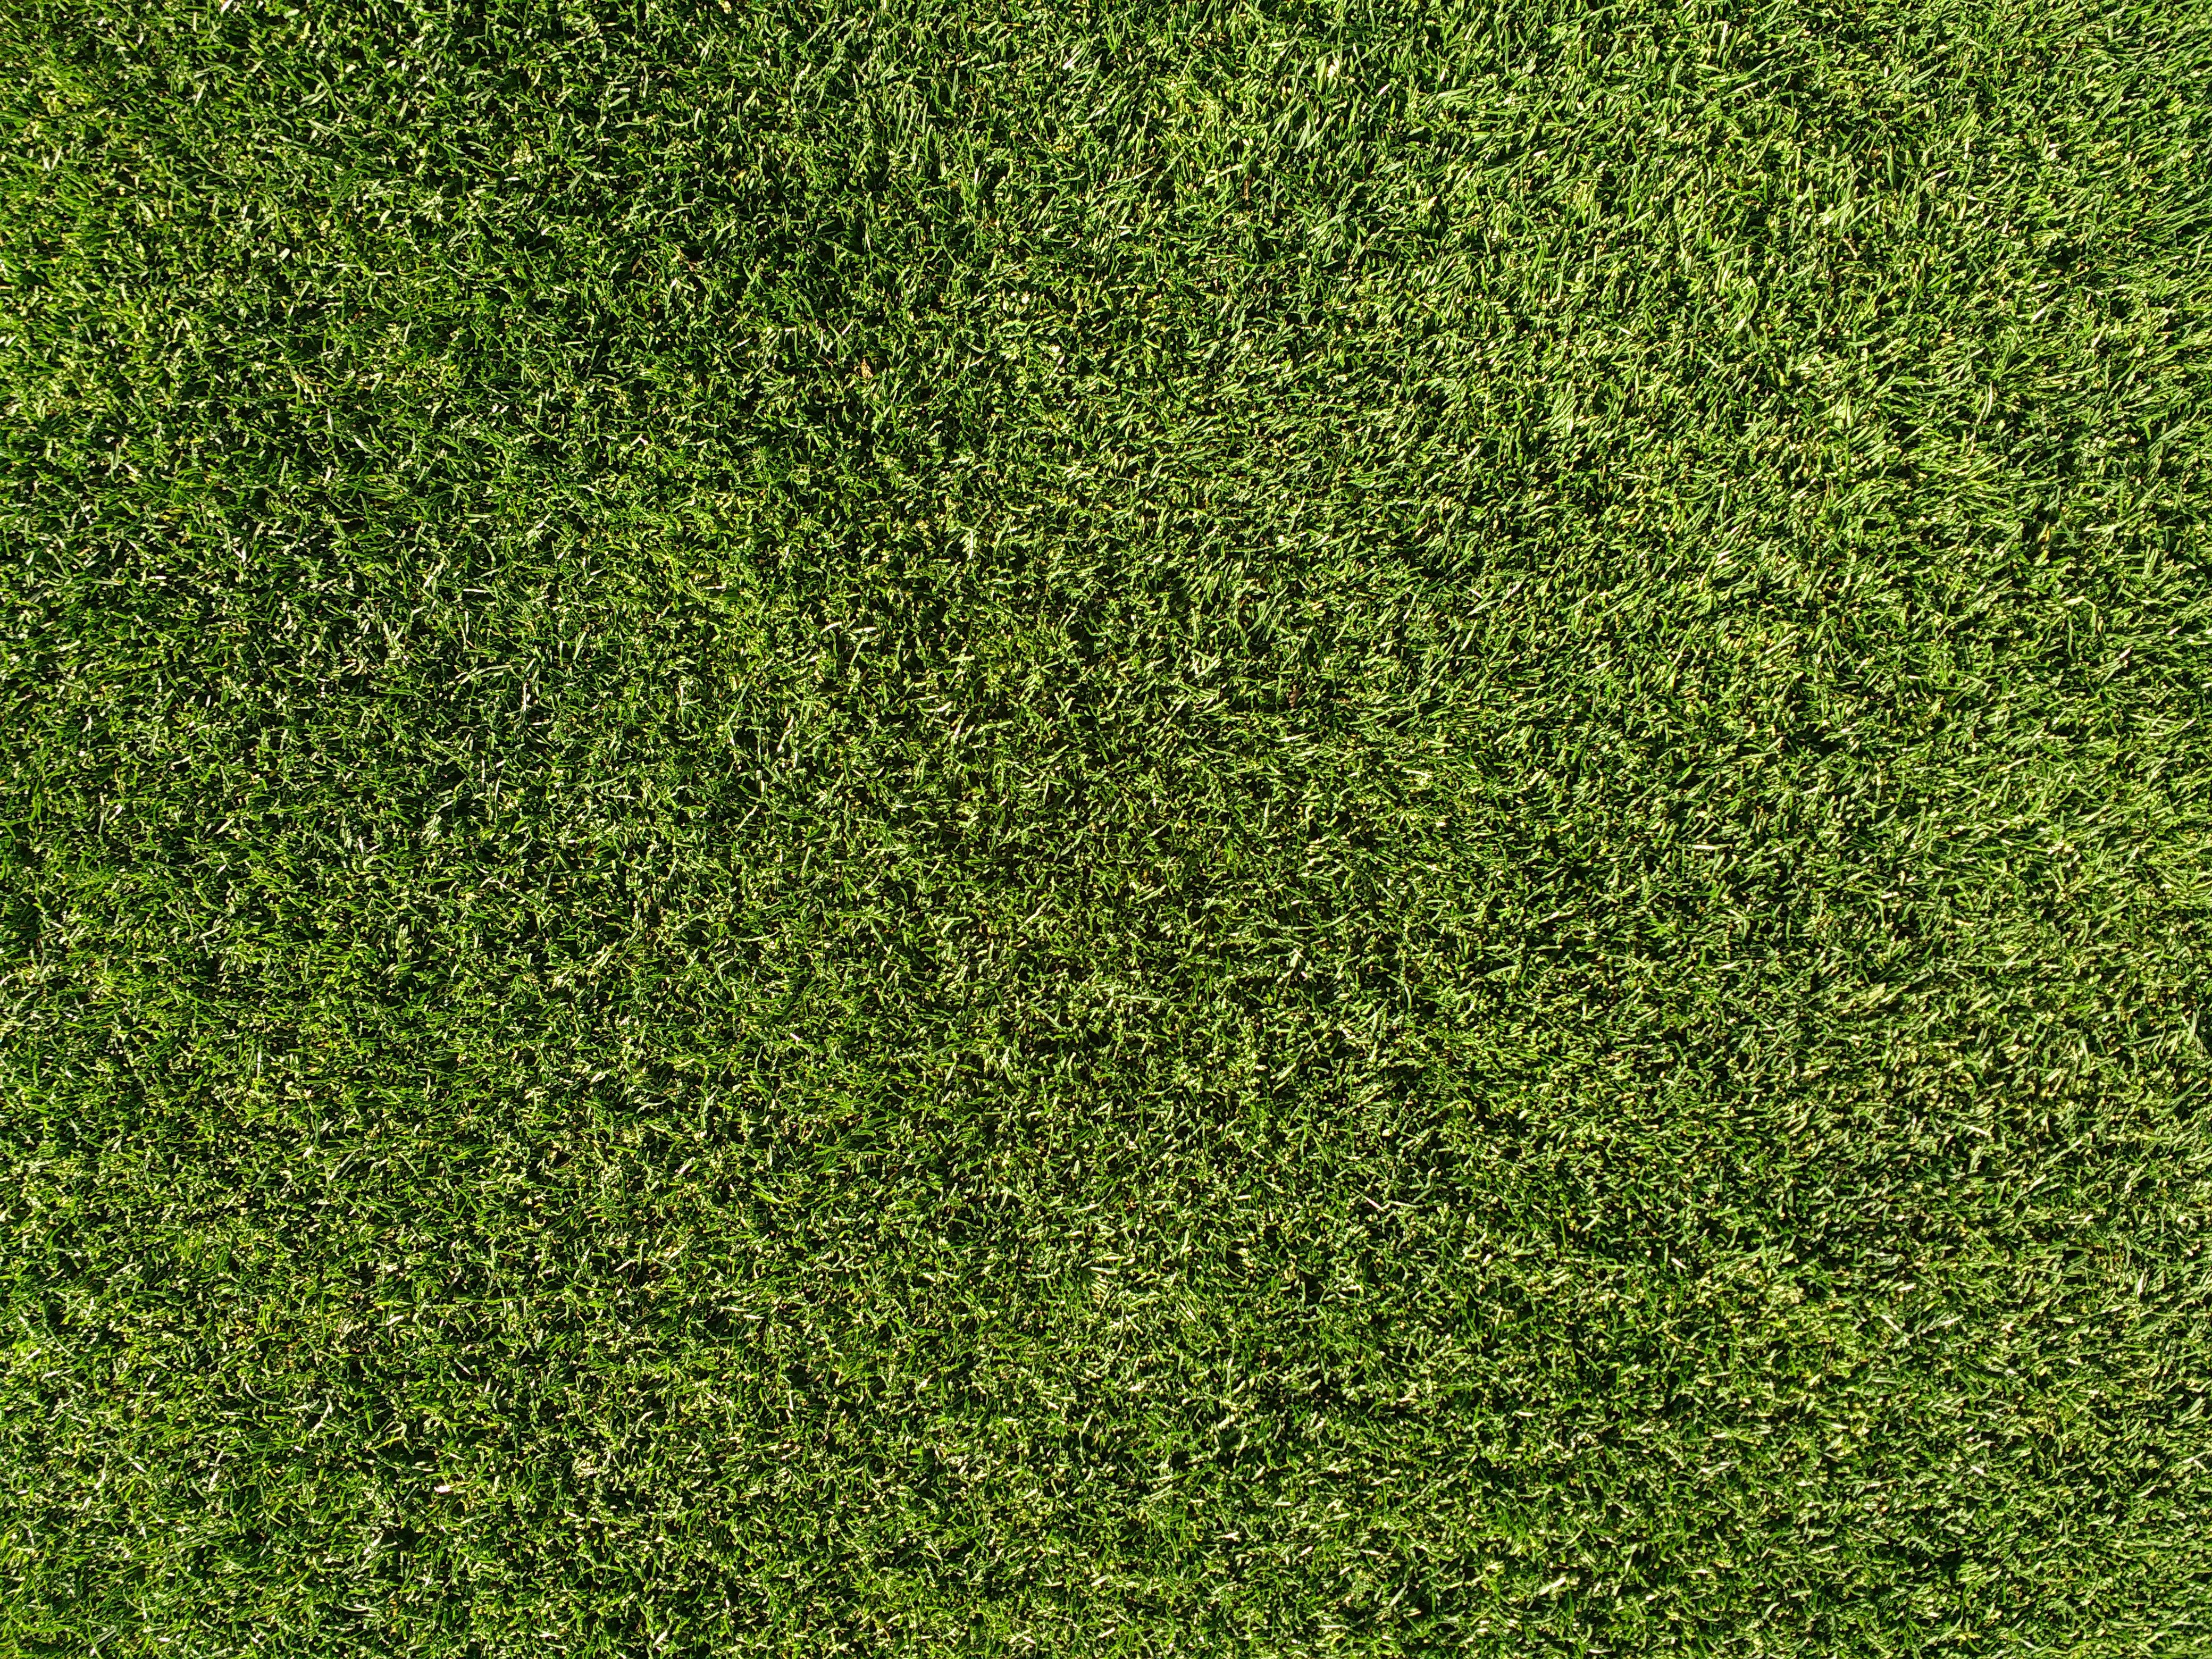 Grass Lawn Texture Picture Free Photograph Photos Public Domain 